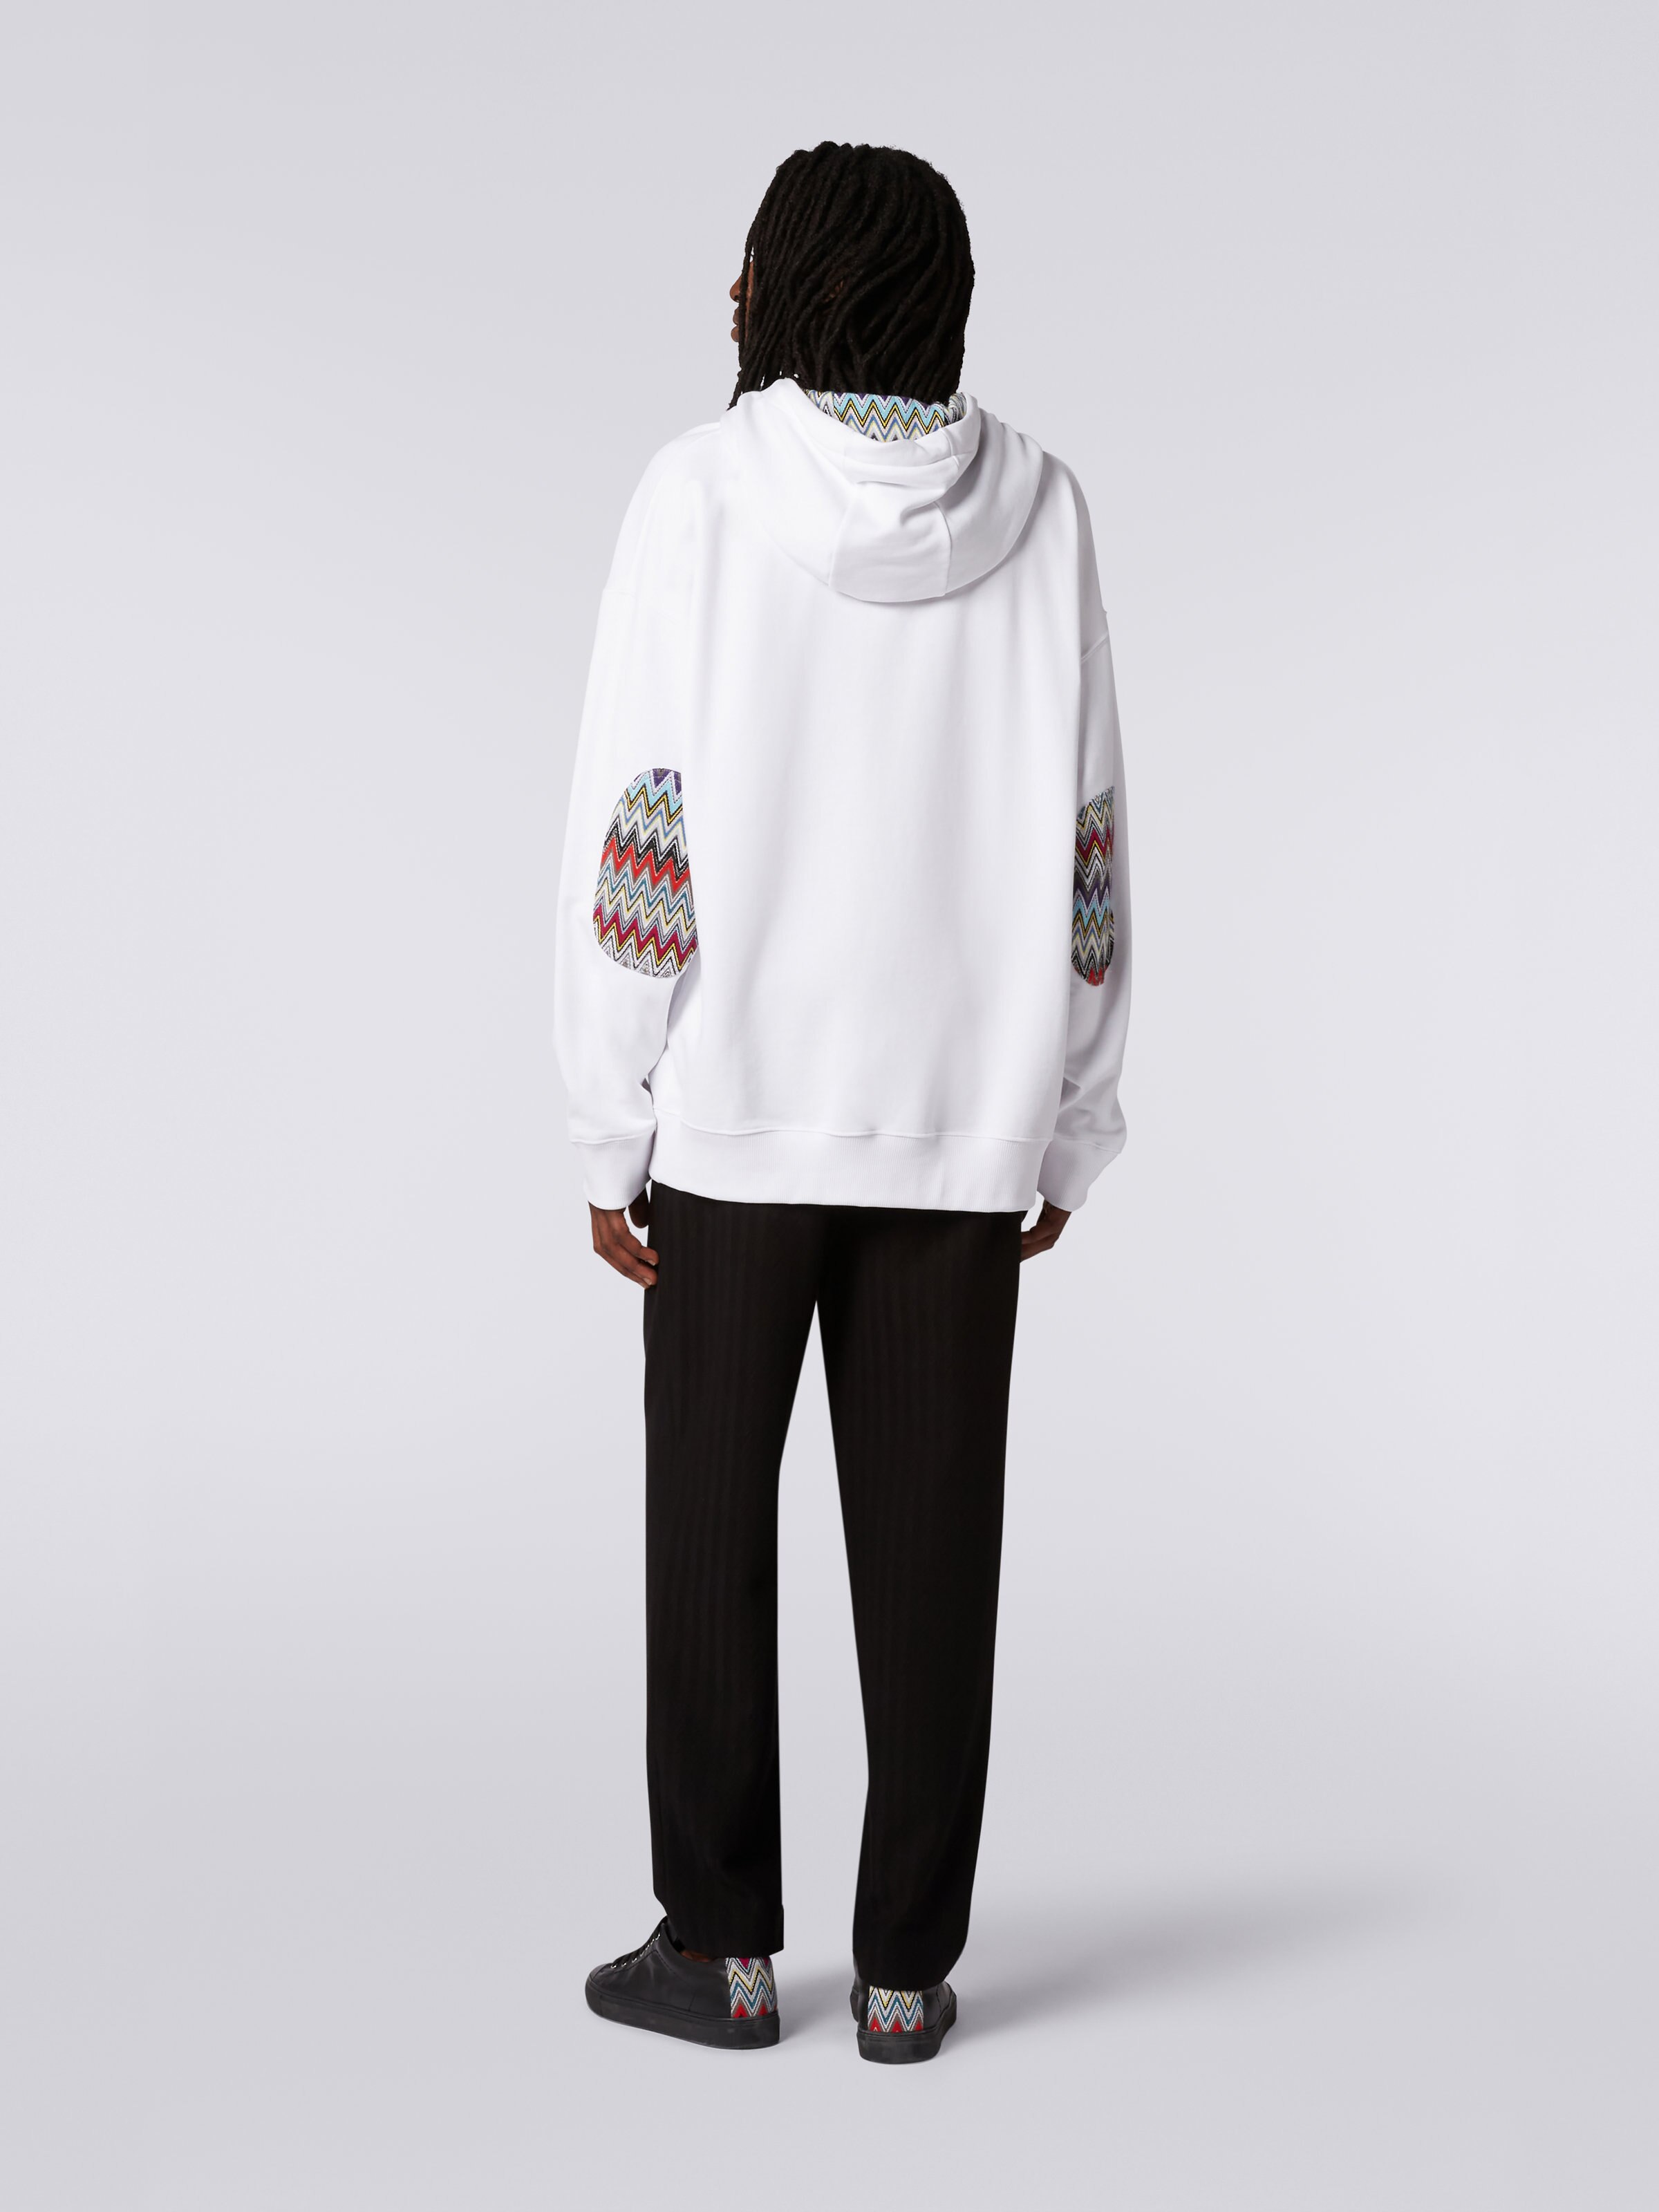 Baumwollsweatshirt mit Kapuze, Reißverschluss und mehrfarbigen Strickeinsätzen, Weiß  - 3